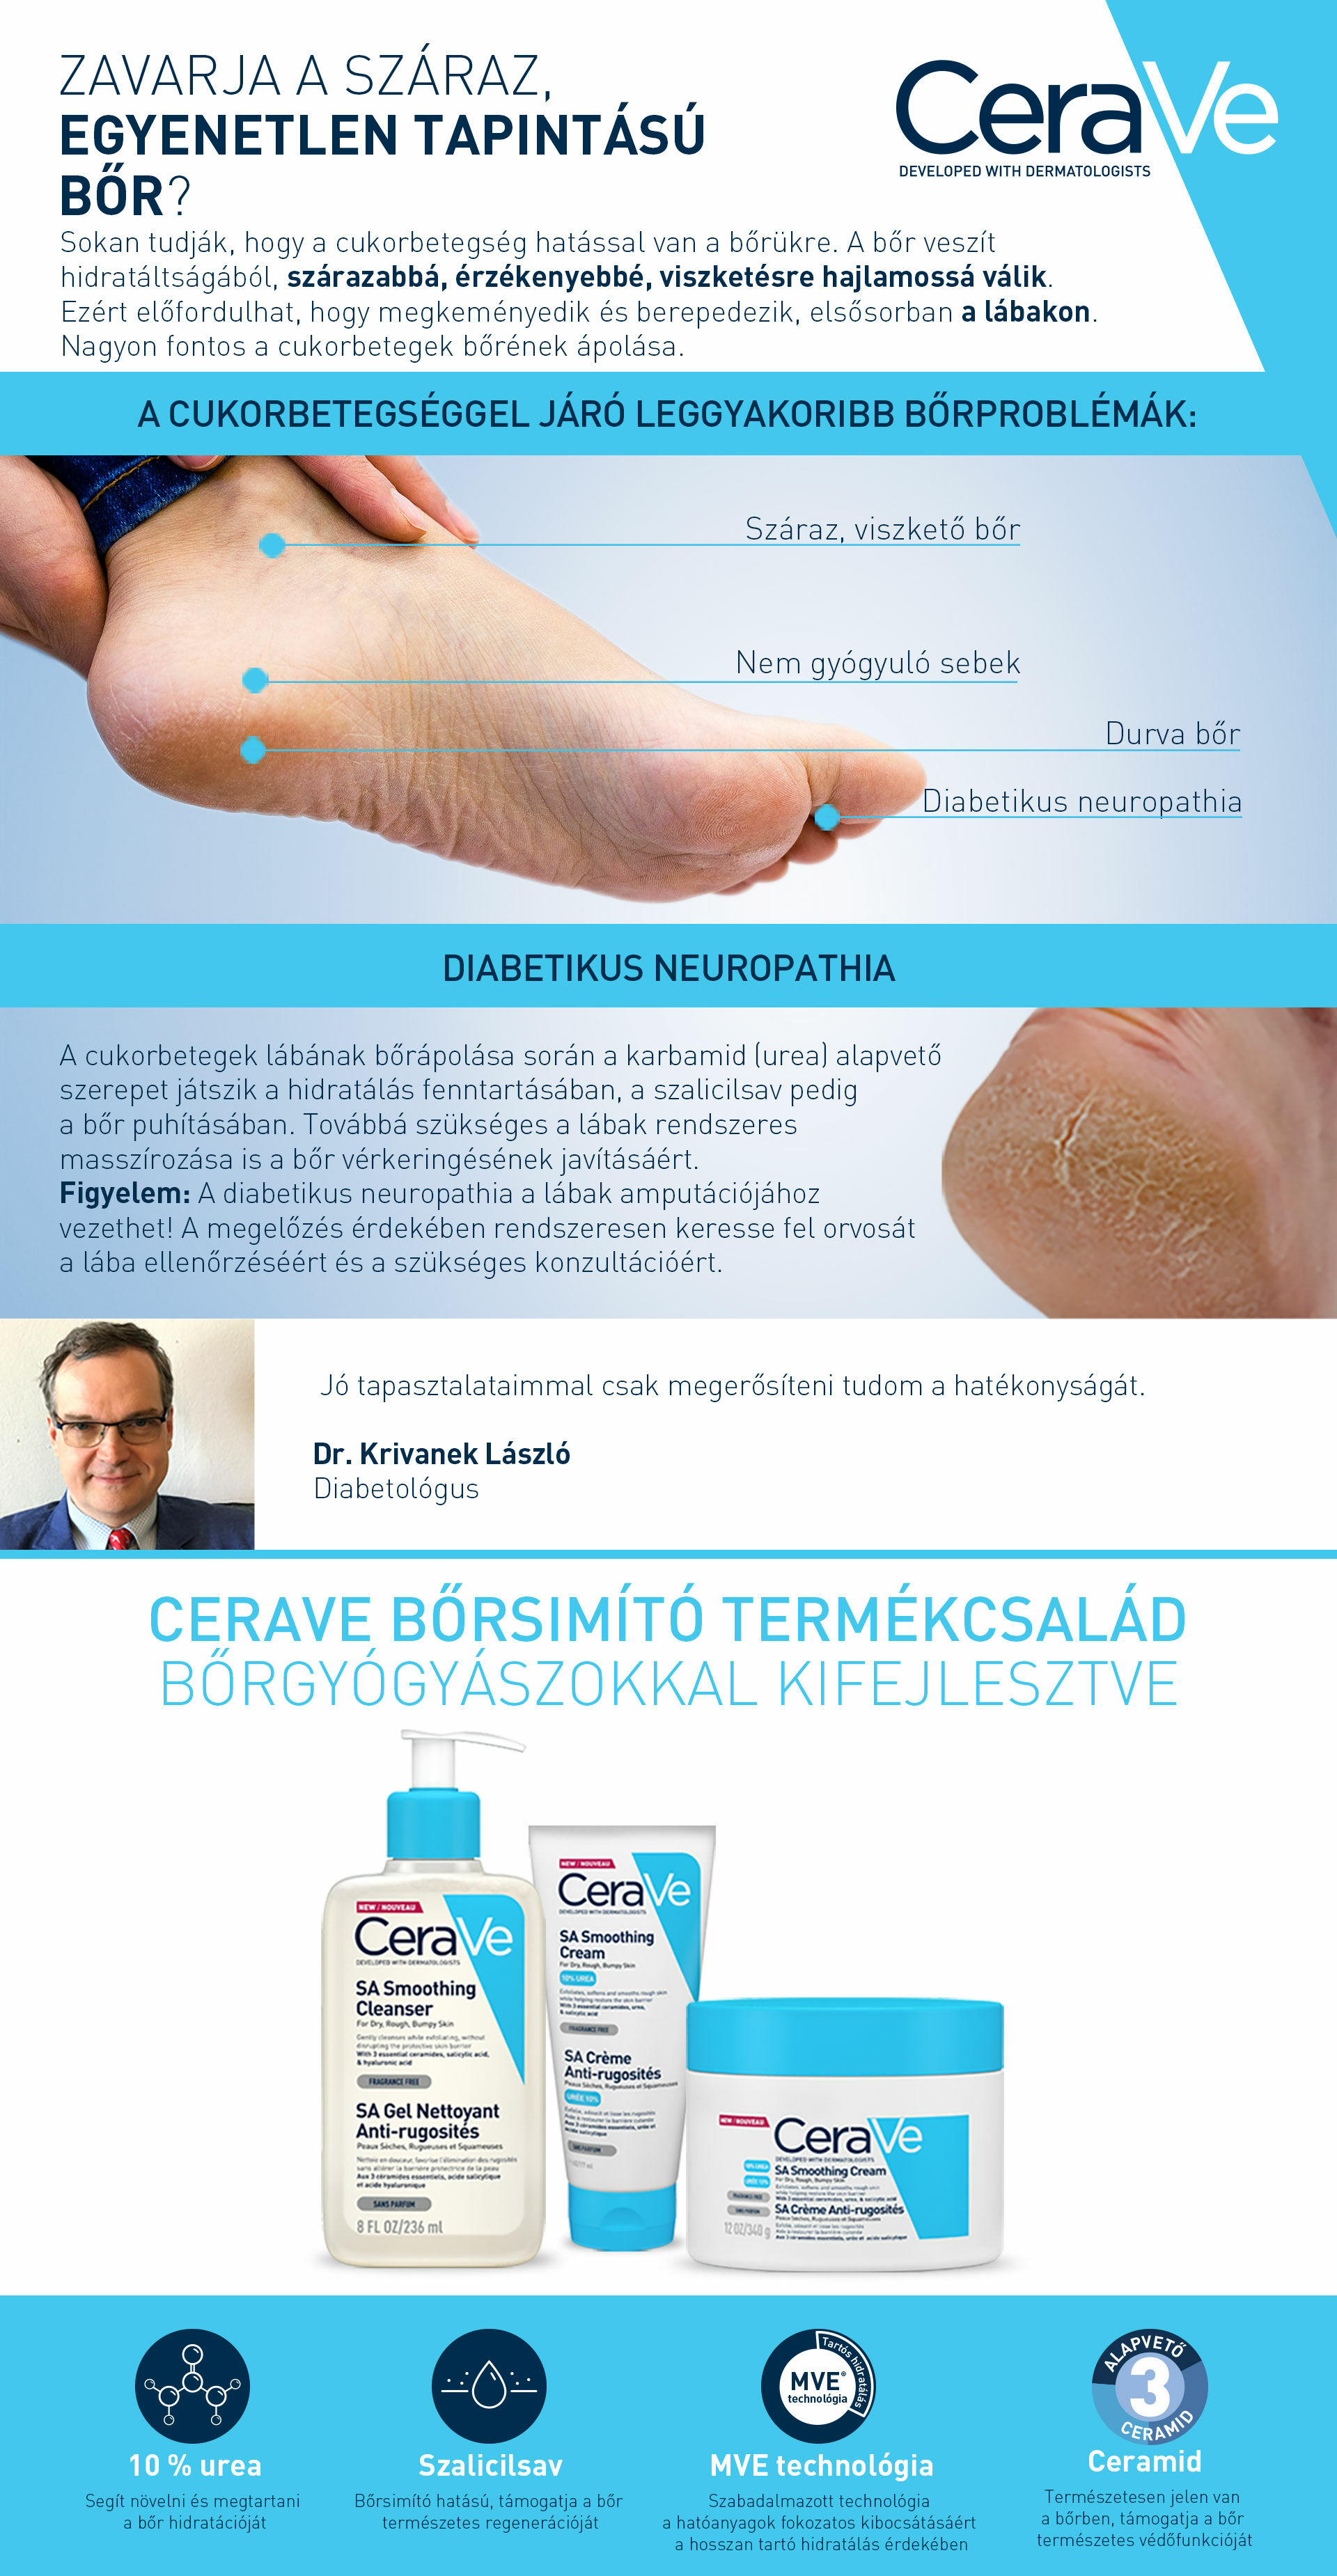 CeraVe SA termékeket javasoljuk diabetikus neuropathia esetén.